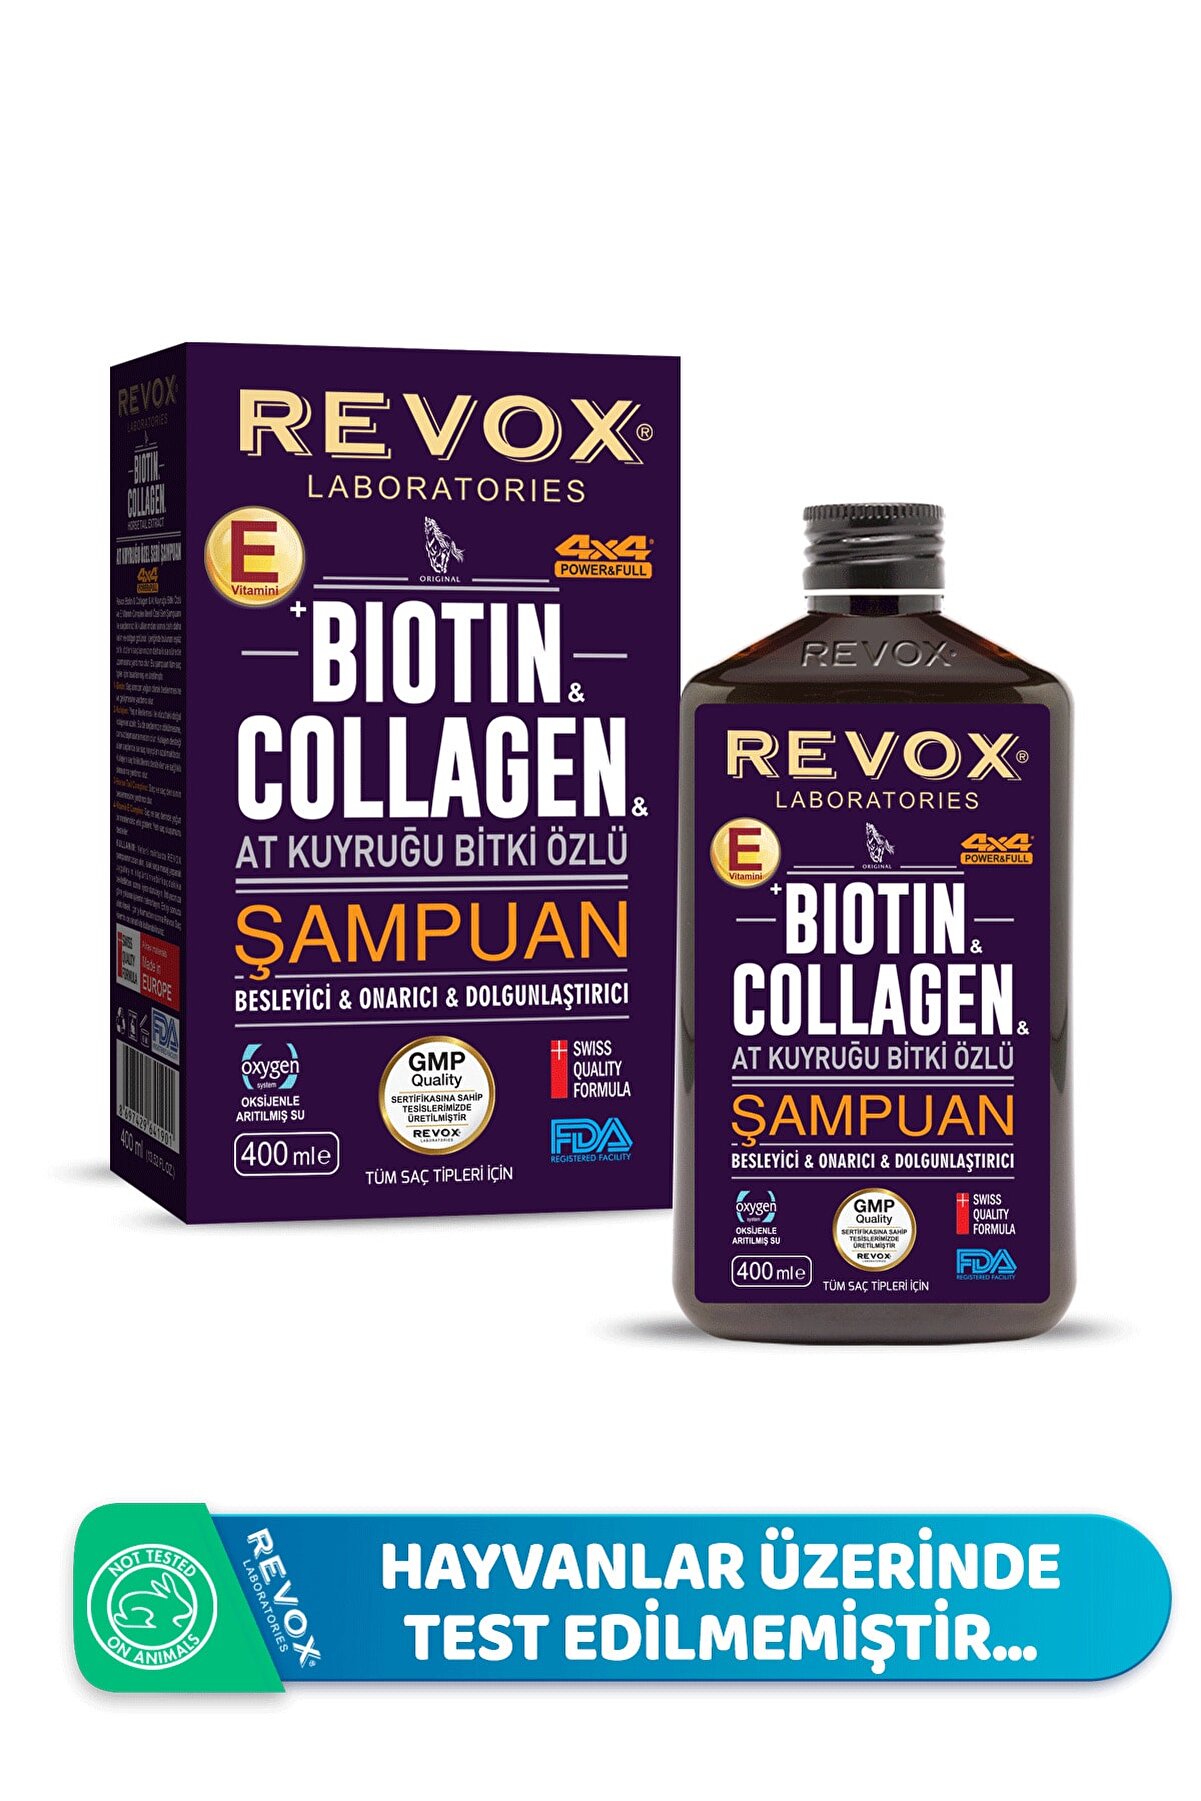 Revox Bıotın & Collagen + At Kuyruğu Bitki Özlü Şampuan